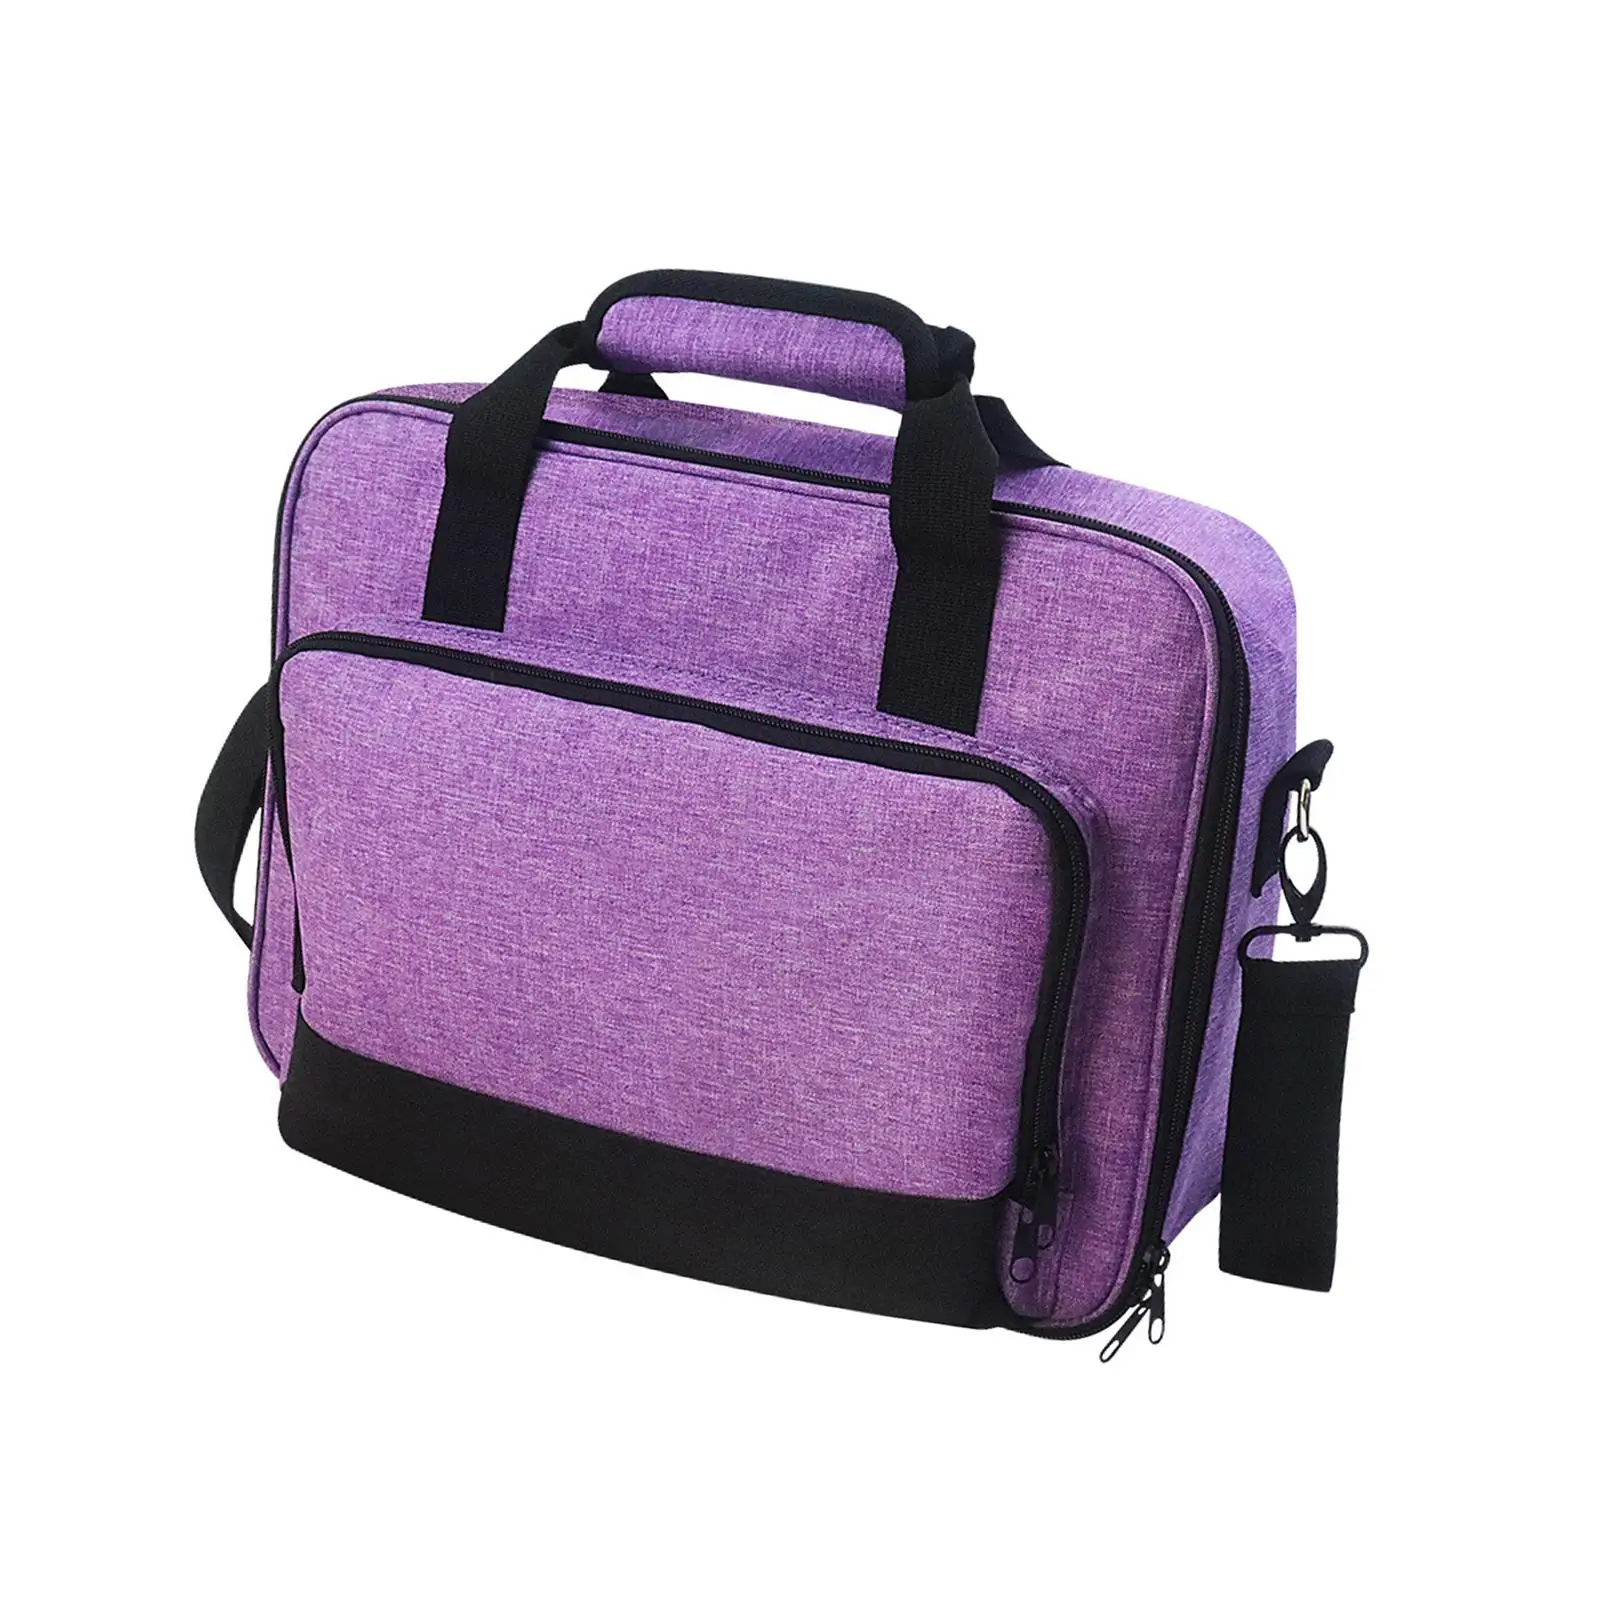 Portable Projector Storage Bag 36x28x10cm Detachable Shoulder Strap Sturdy Handle Purple Stylish Versatile for Travelling